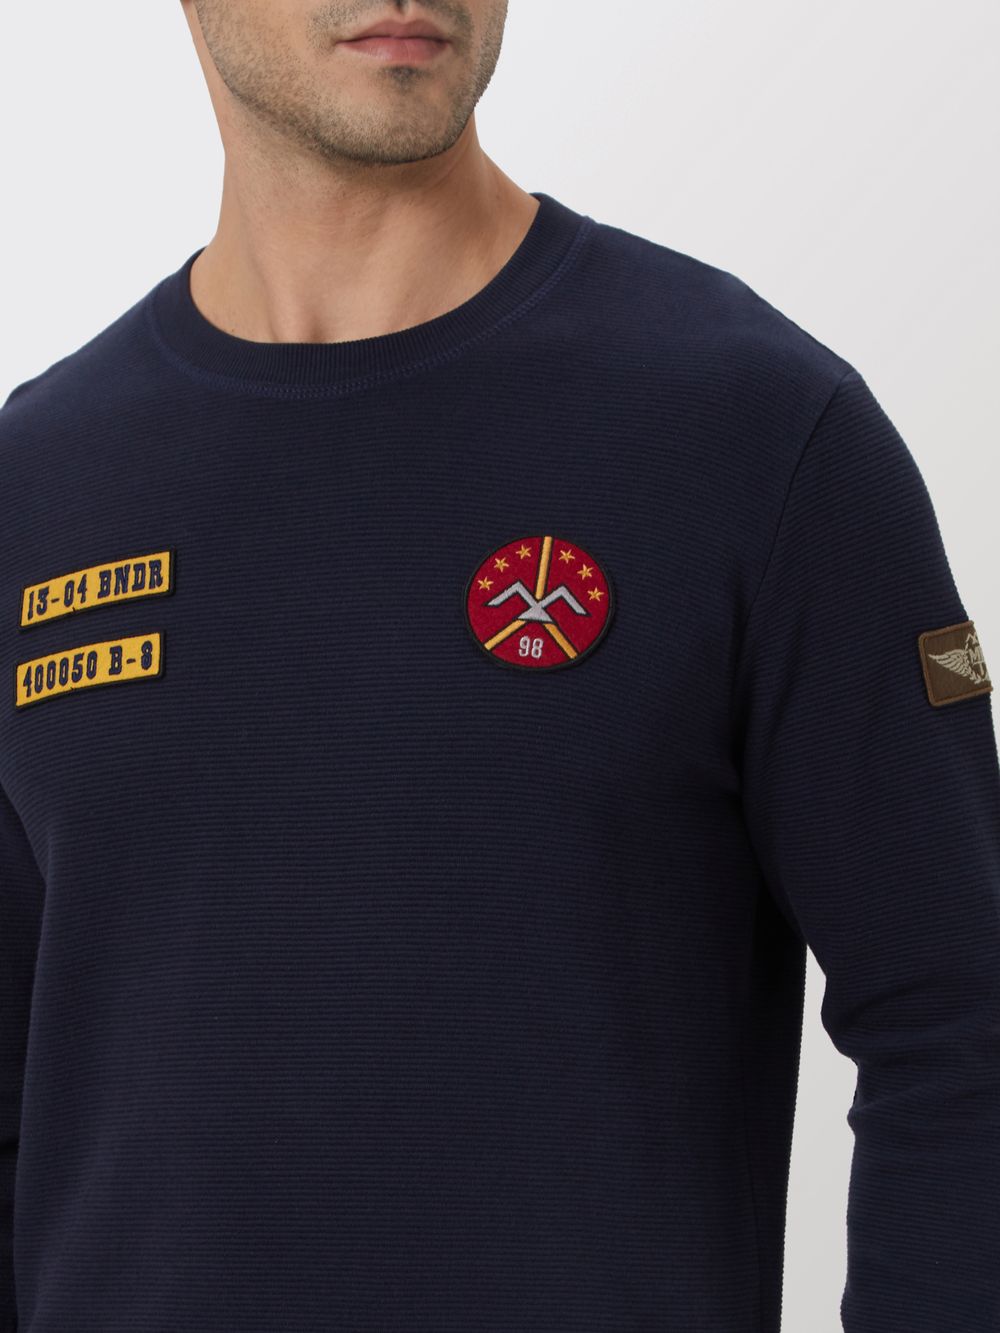 Navy Badged Chest Slim Fit Textured Jersey Sweatshirt